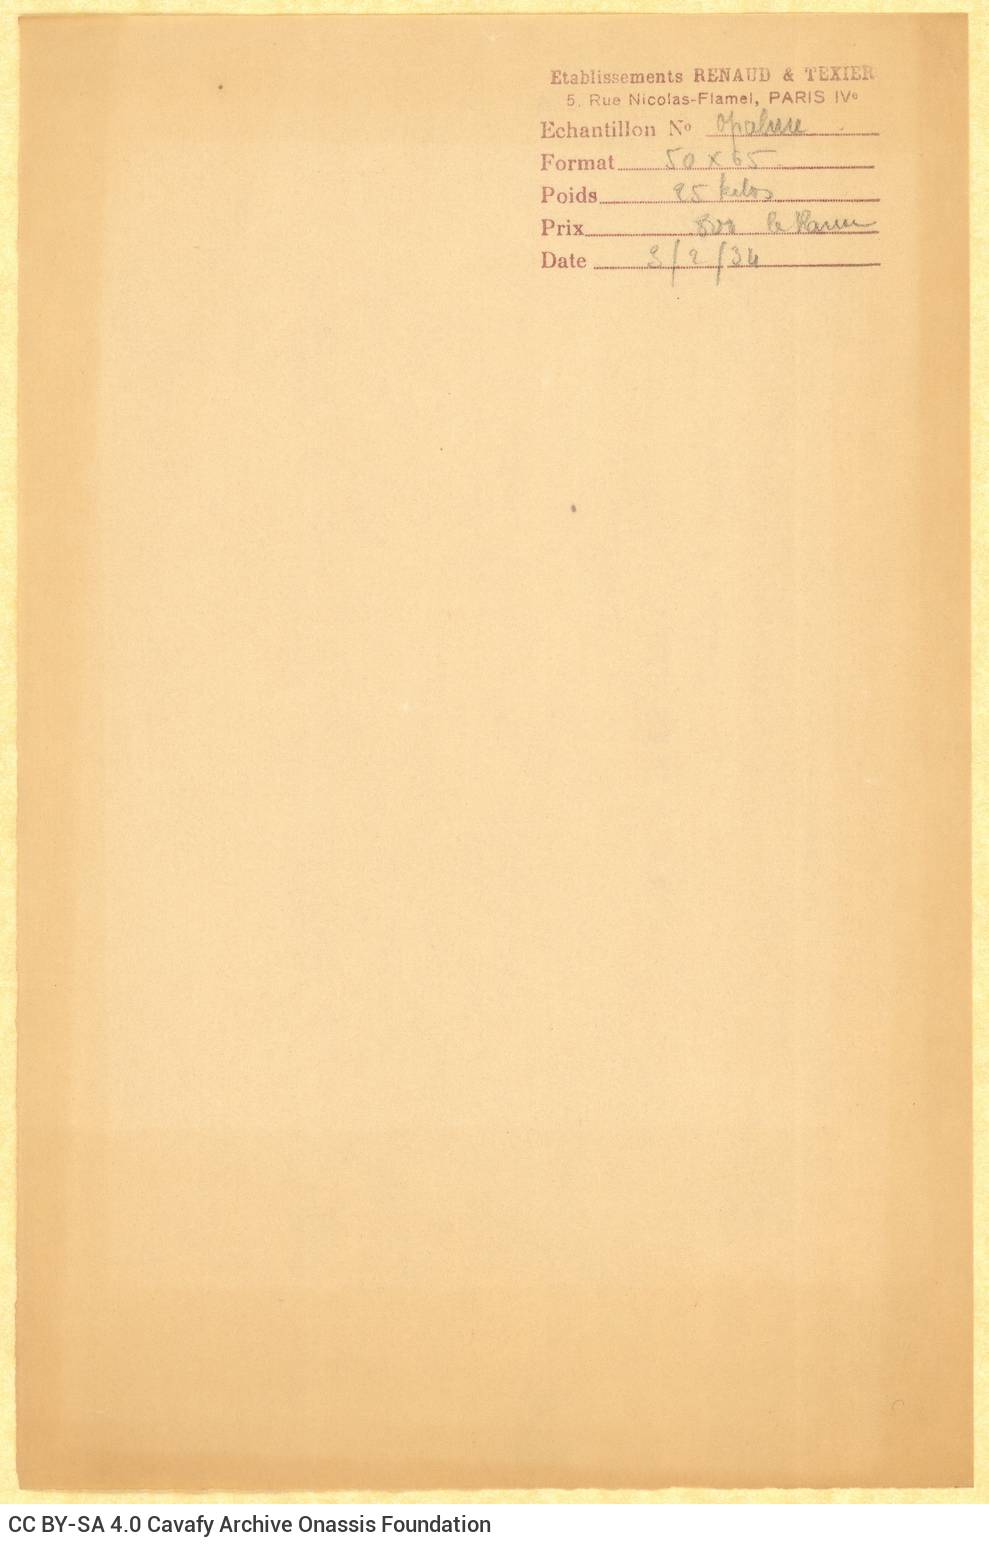 Δείγμα τυπογραφικού χαρτιού («Hollande à la Forme Crème, Hollande à la Forme Blanc») της ε�